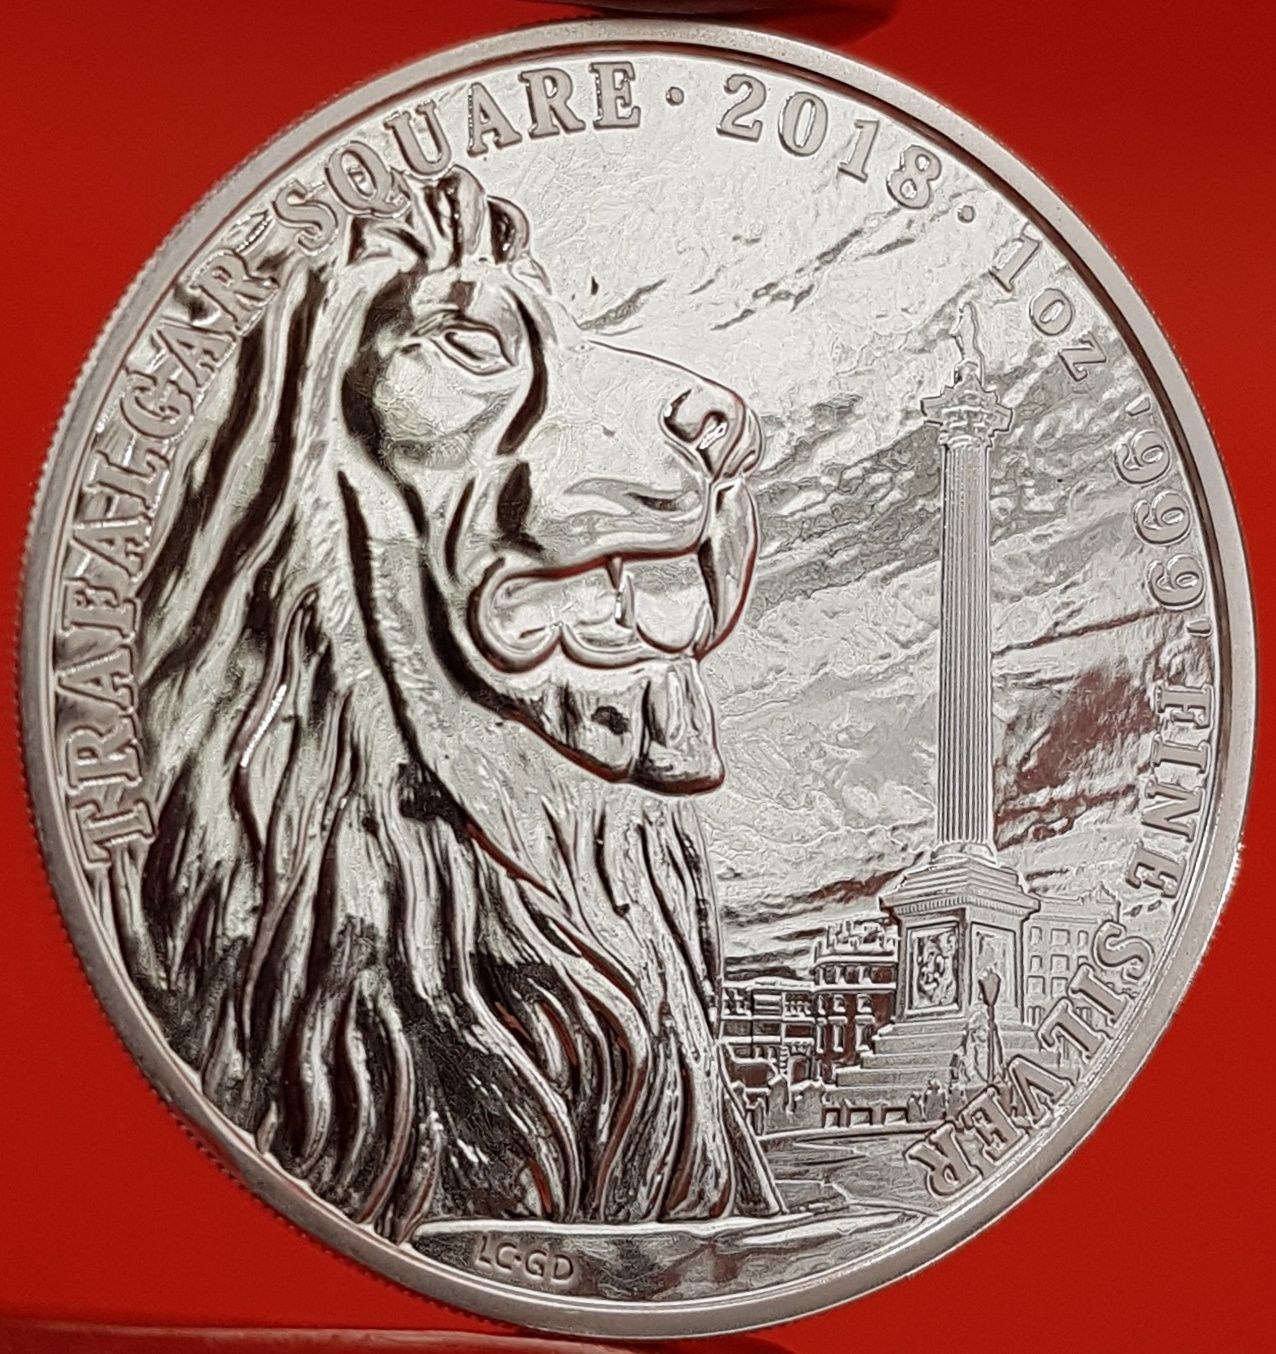 Marea Britanie Royal Mint monede lingou argint 999